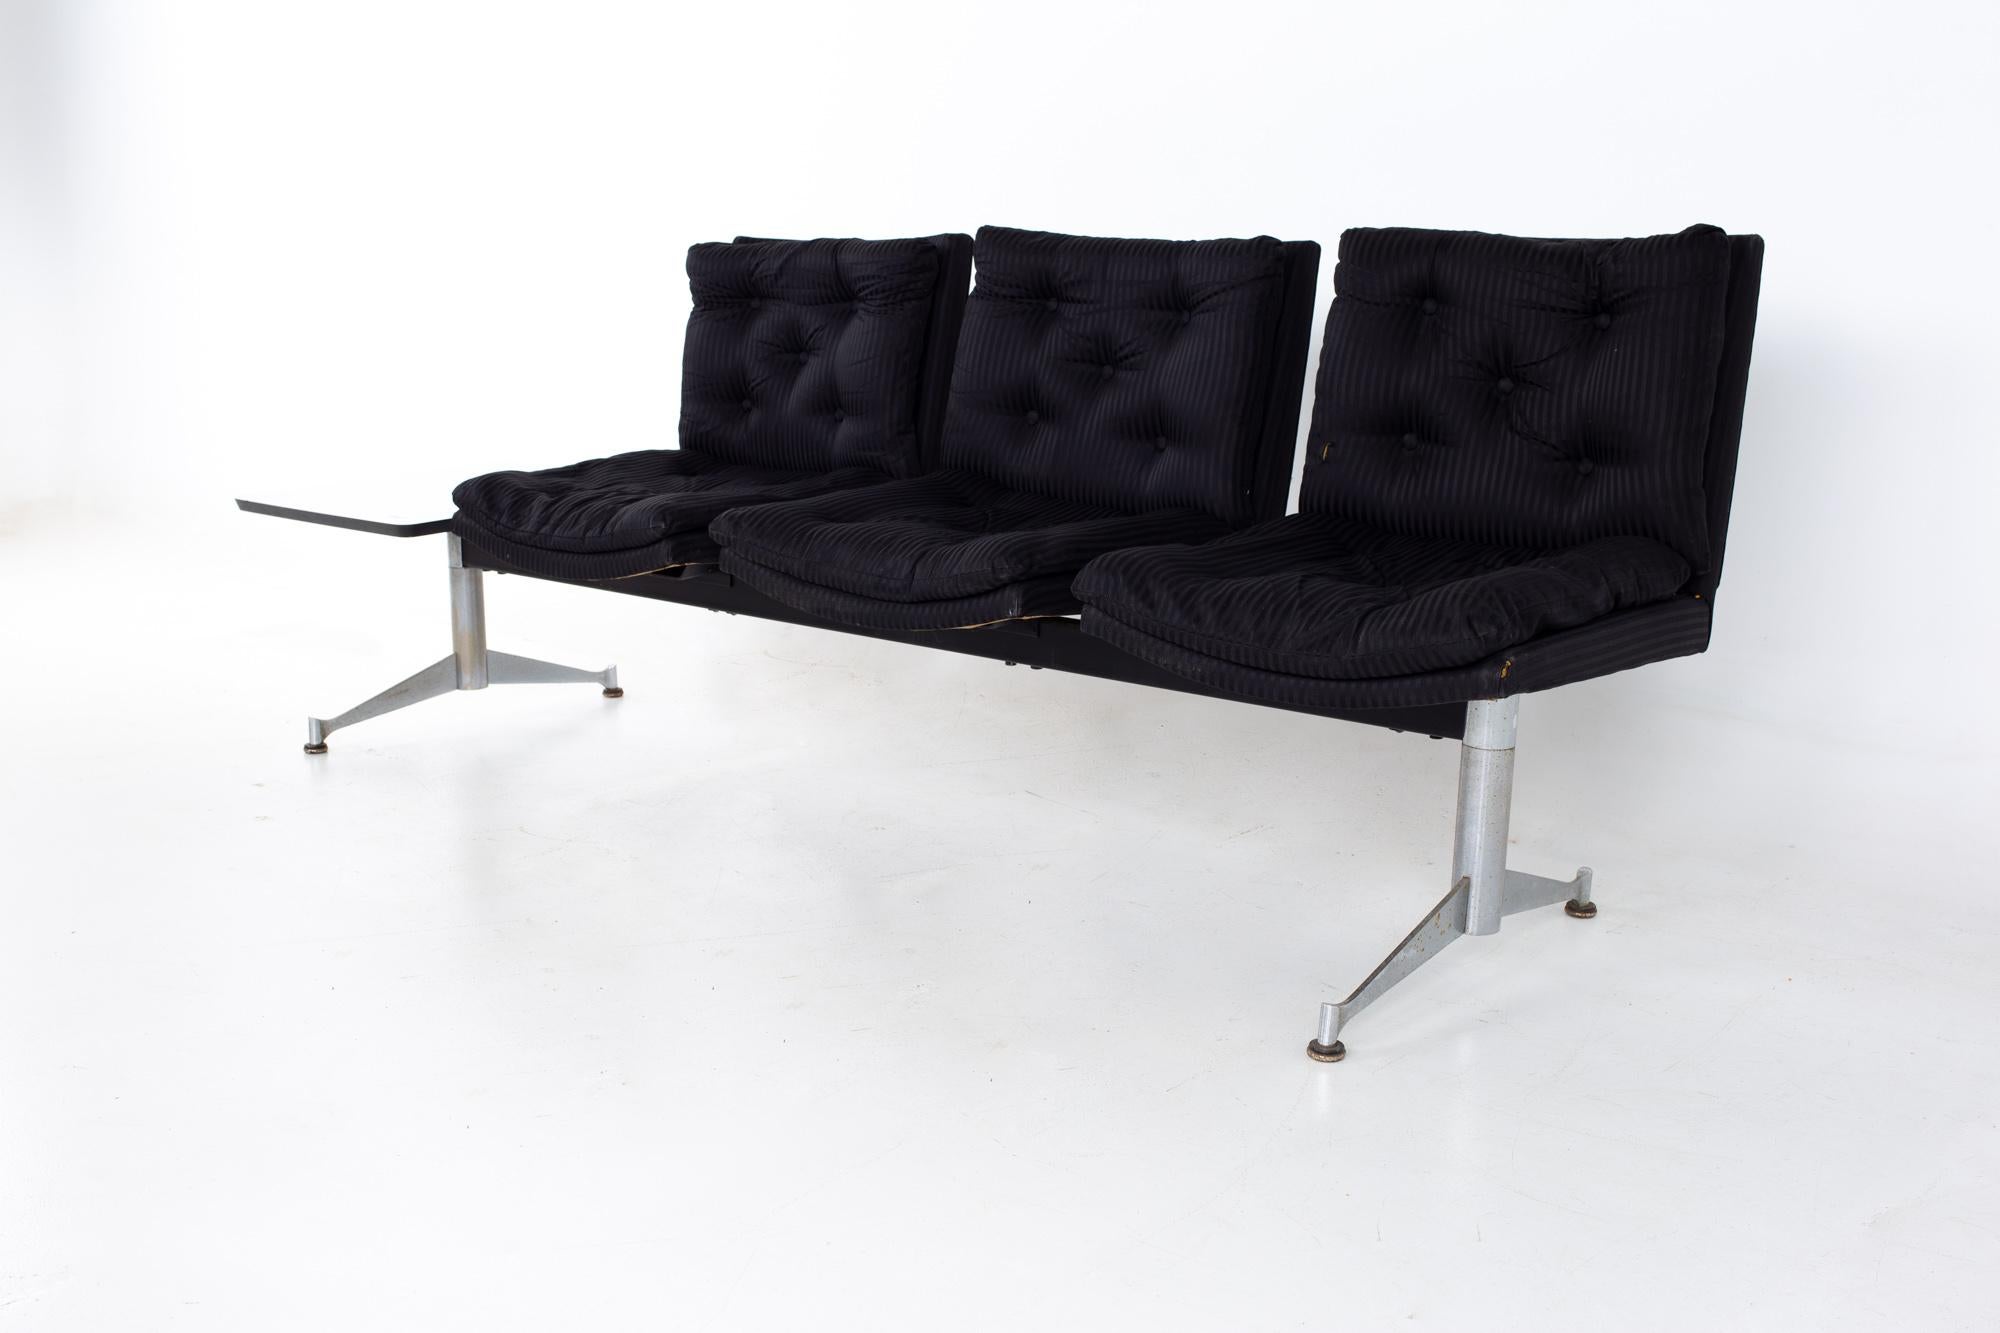 Arthur Umanoff pour Madison Furniture Banc assis modulaire du milieu du siècle dernier
Le banc mesure : 87.5 de large x 25 de profond x 32 de haut, avec une hauteur d'assise de 20 pouces

Tous les meubles peuvent être obtenus dans ce que nous